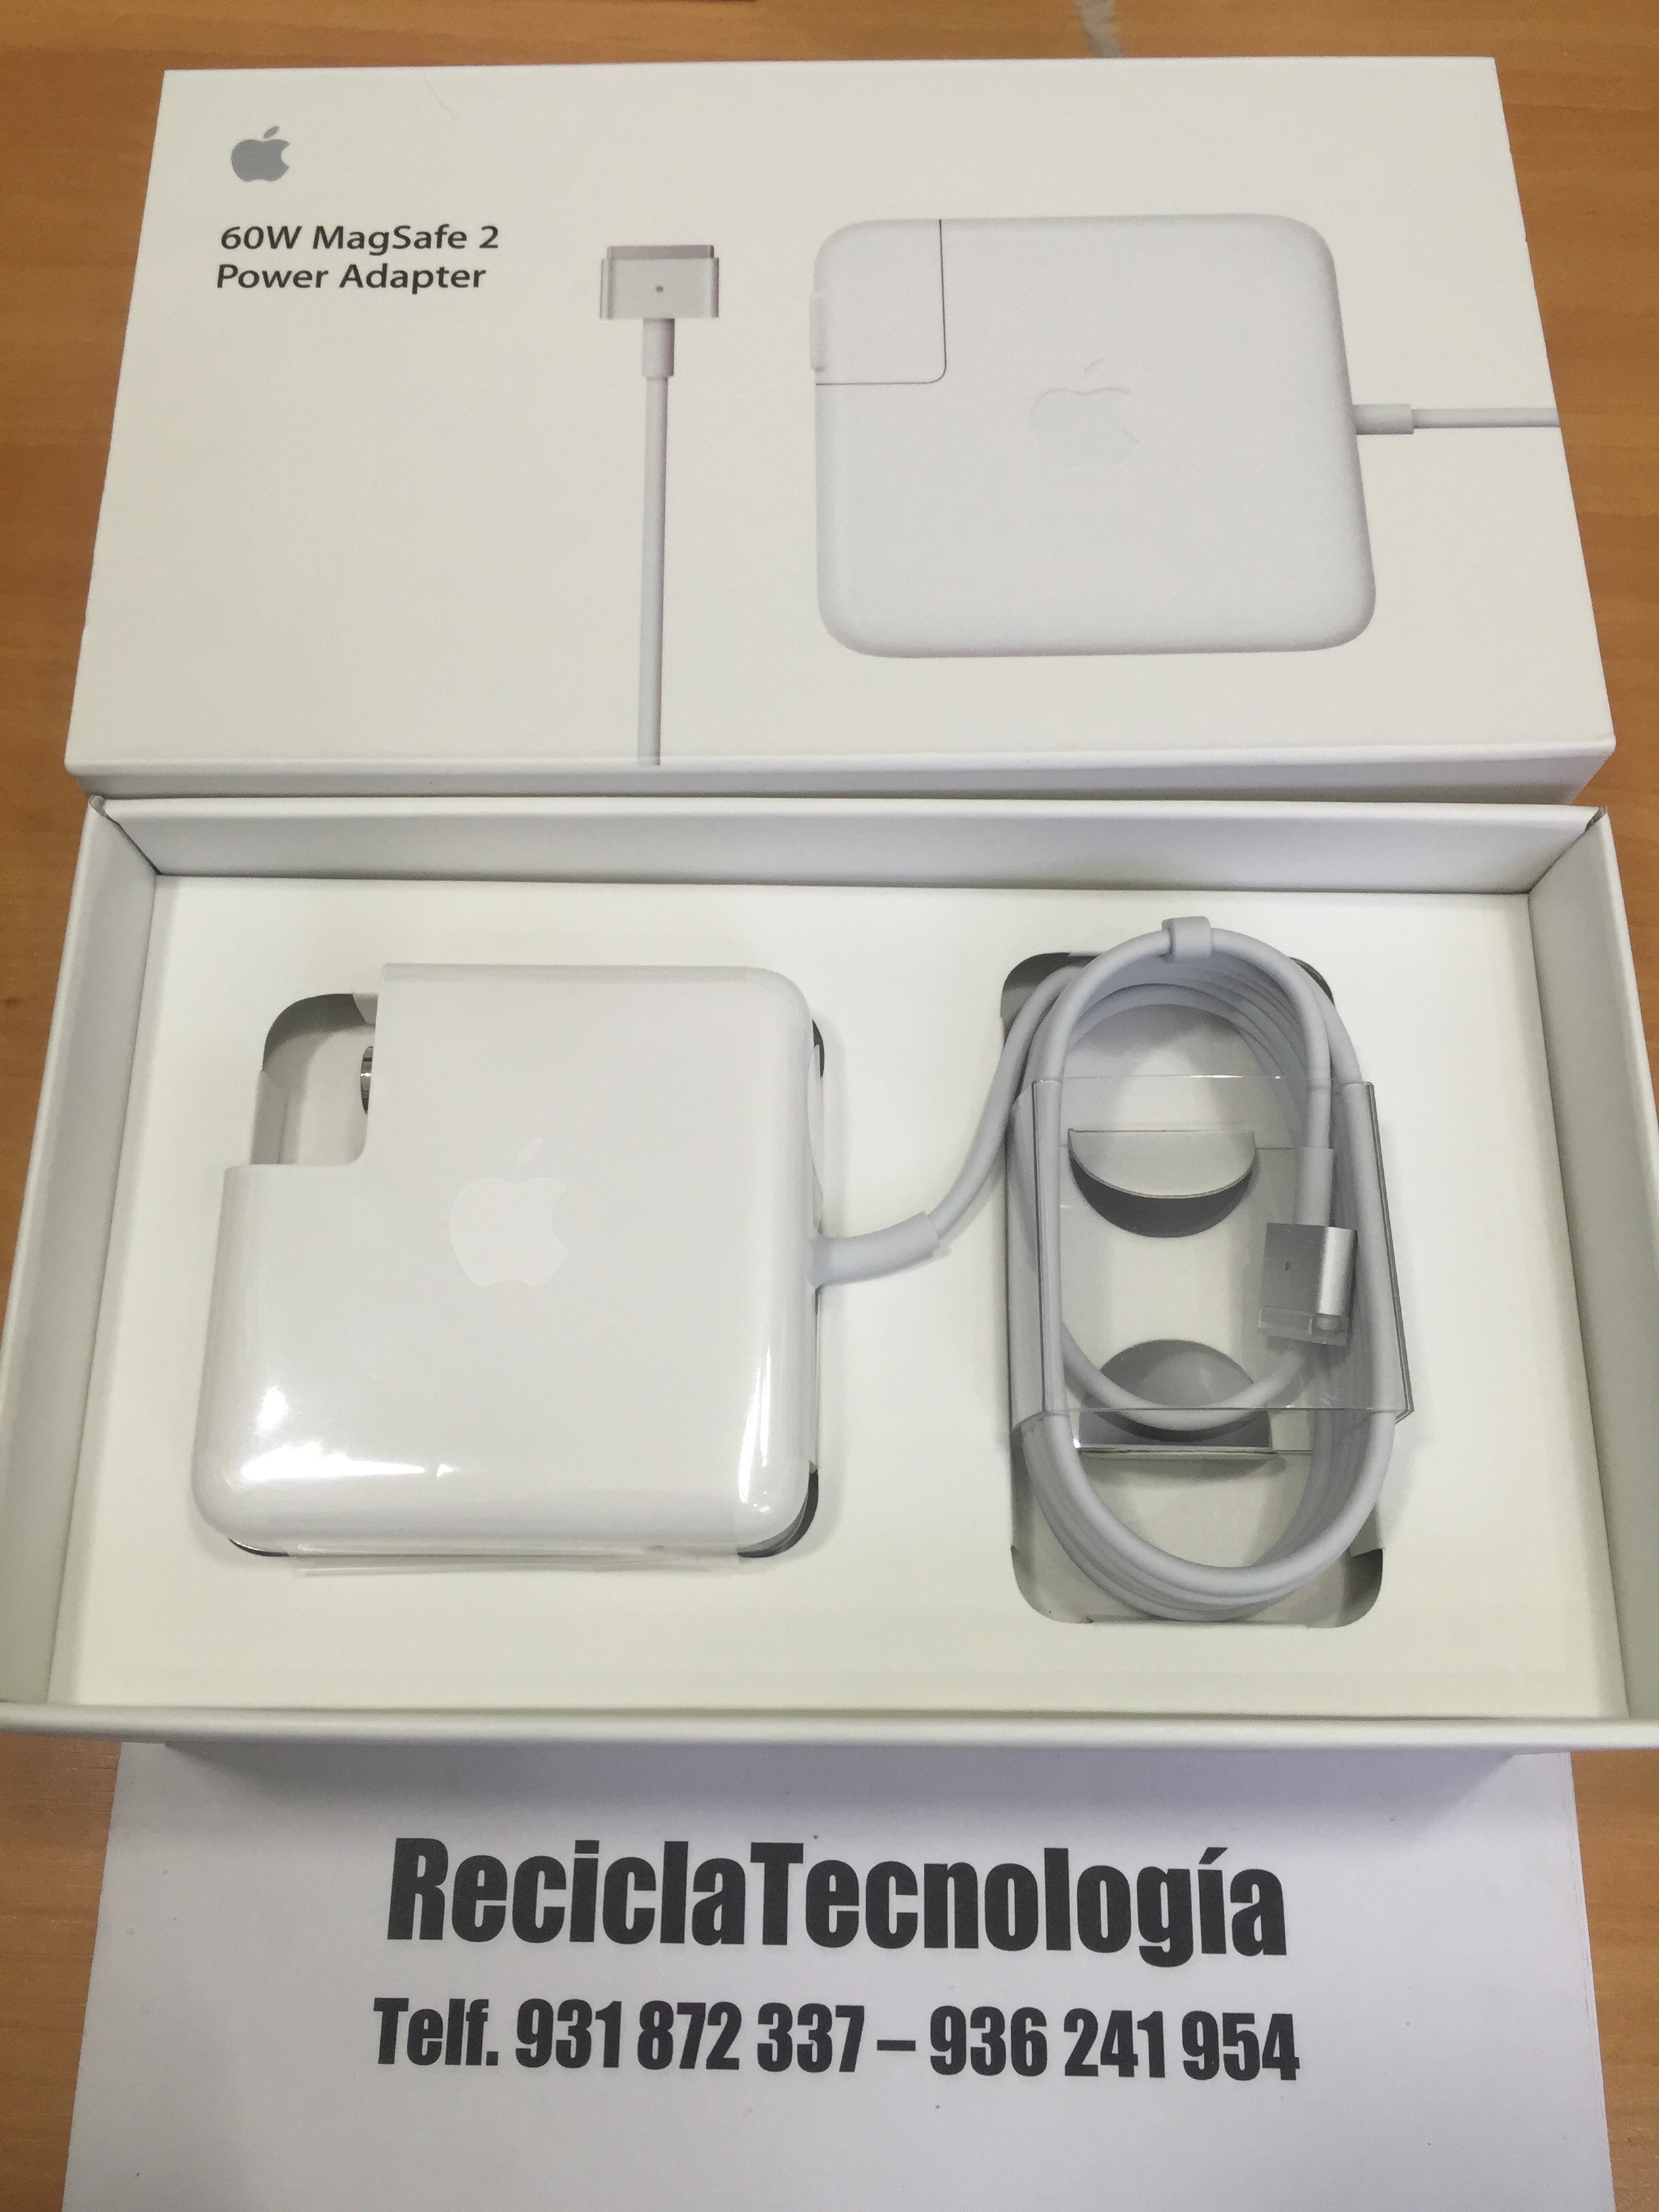 Cargador MagSafe 2 de 45 W - MacOnline  Somos el Principal Apple Premium  Partner en Chile